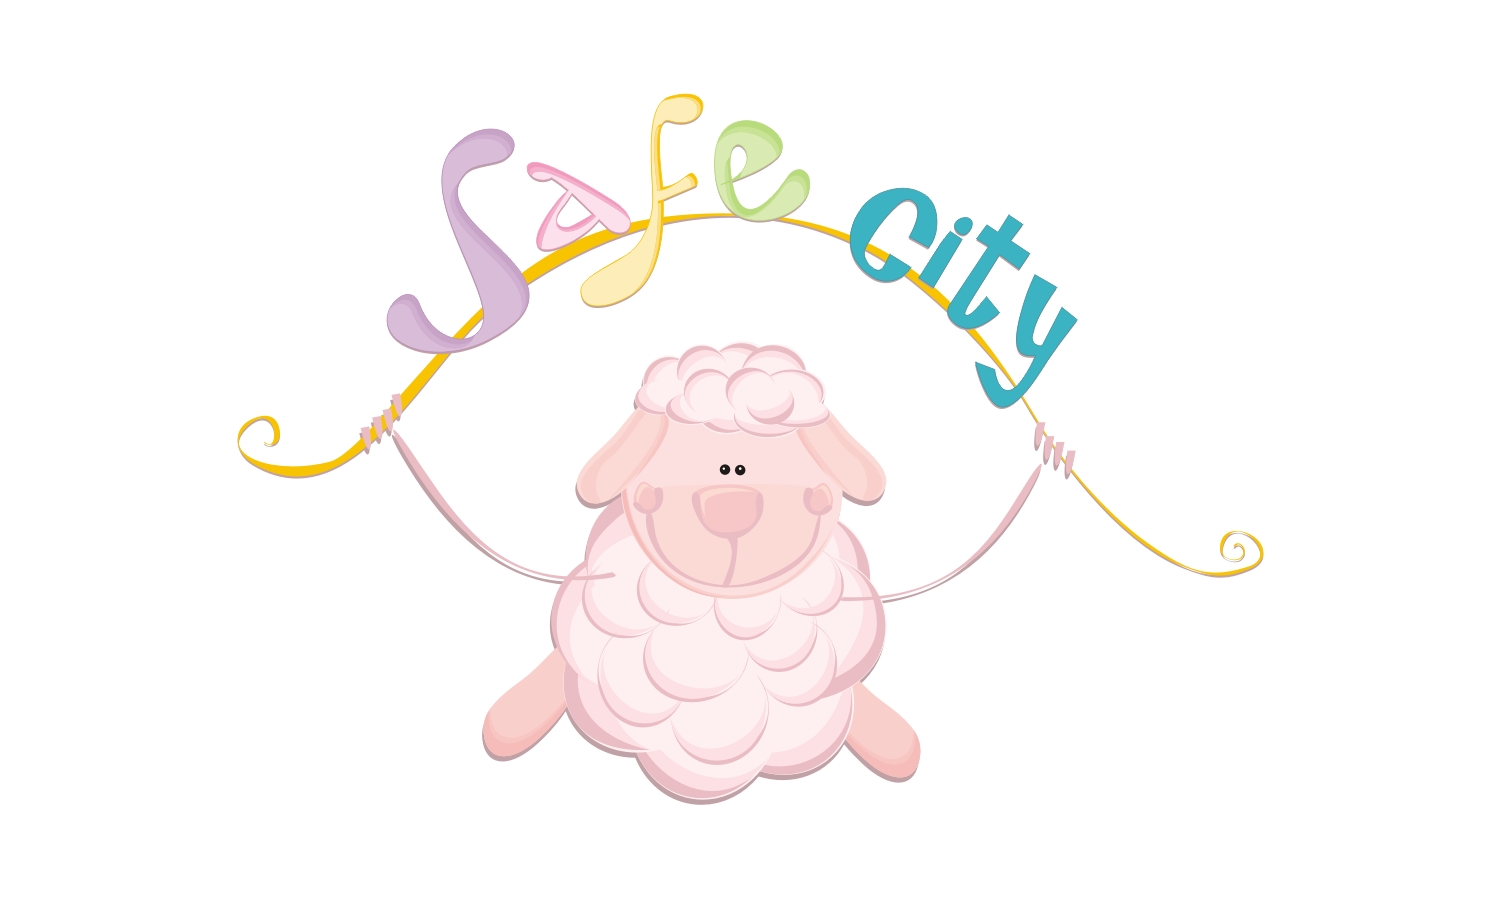 [SAFE+CITY.jpg]